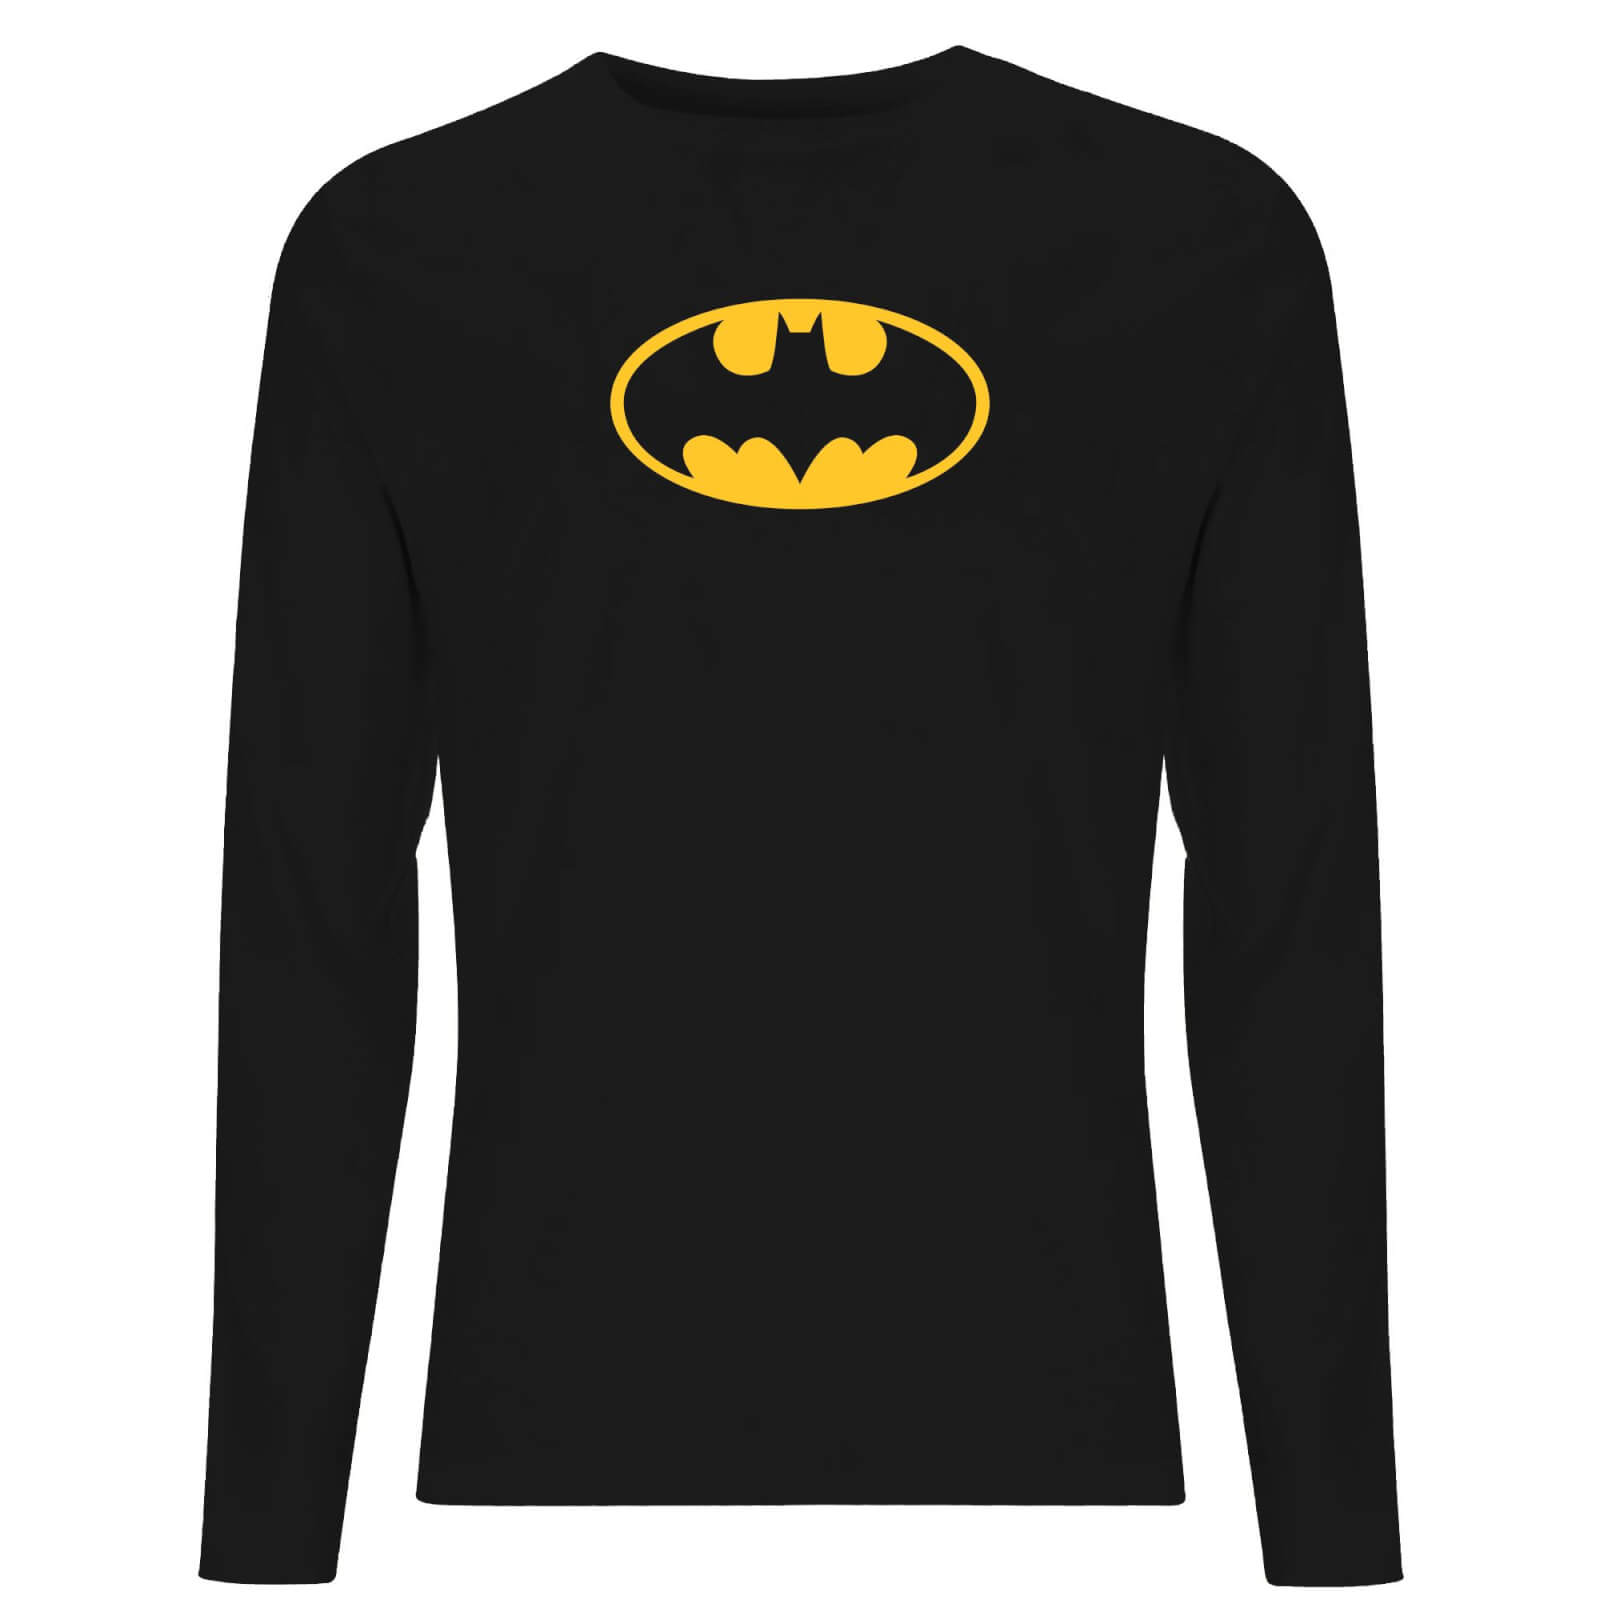 DC Justice League Core Batman Logo Unisex Long Sleeve T-Shirt - Black - XS - Black